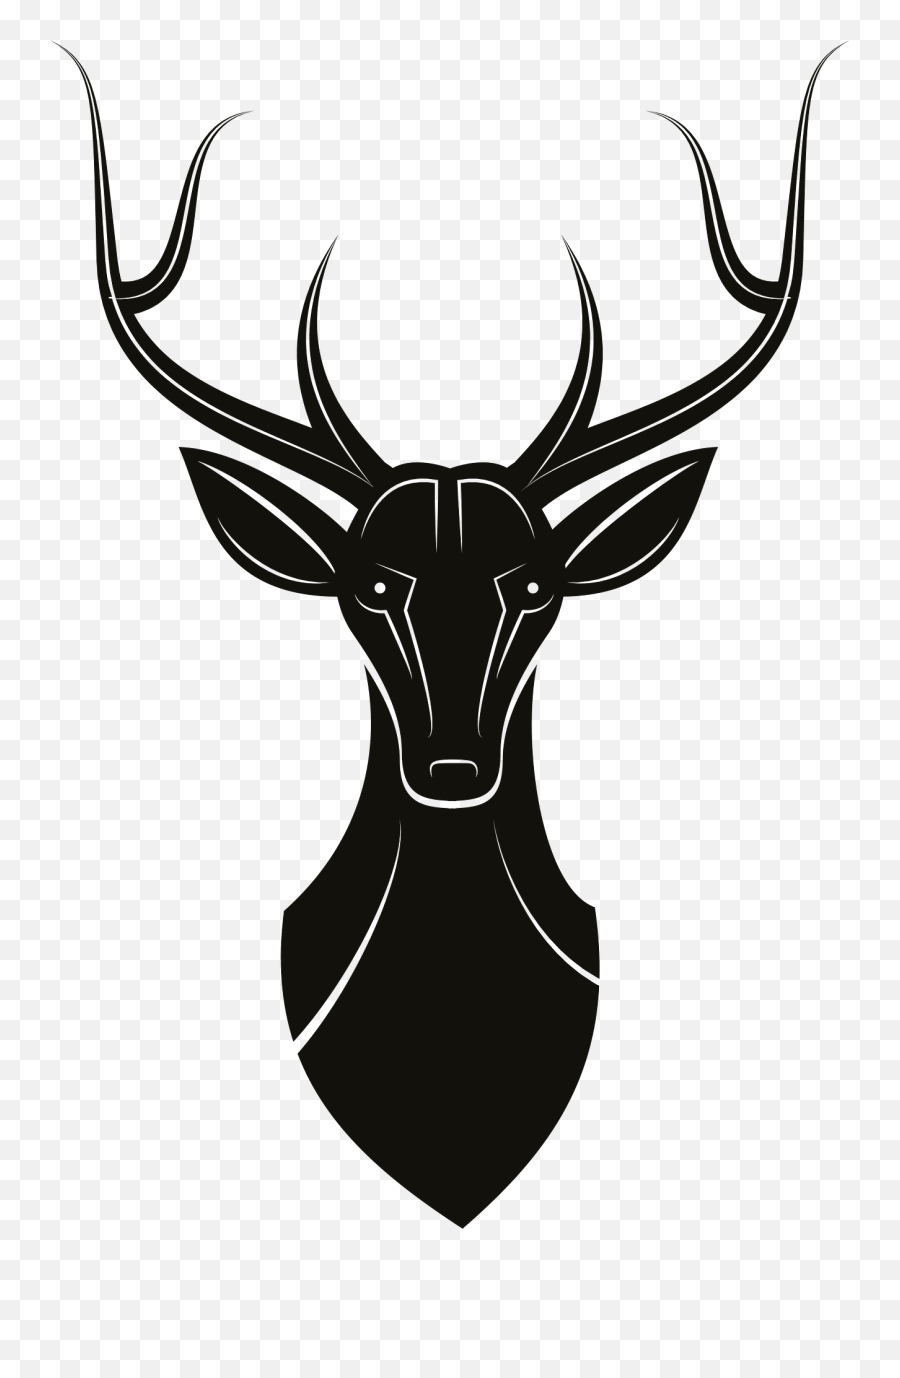 Deer Head Clipart - Stag Silhouette Emoji,Deer Head Clipart